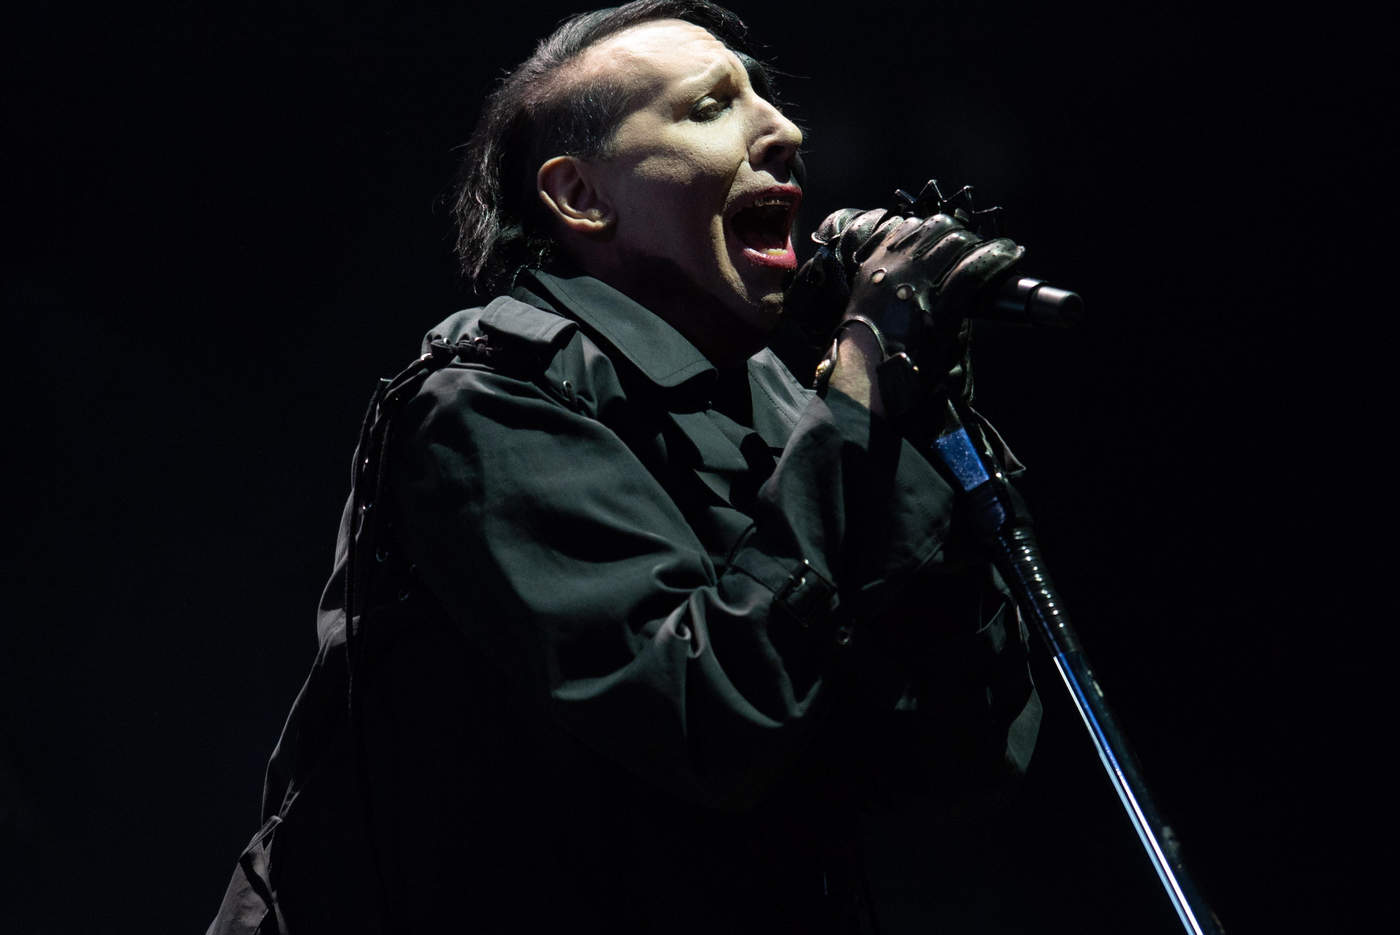 1969: Nace Marilyn Manson, controvertido cantante, actor y director de cine